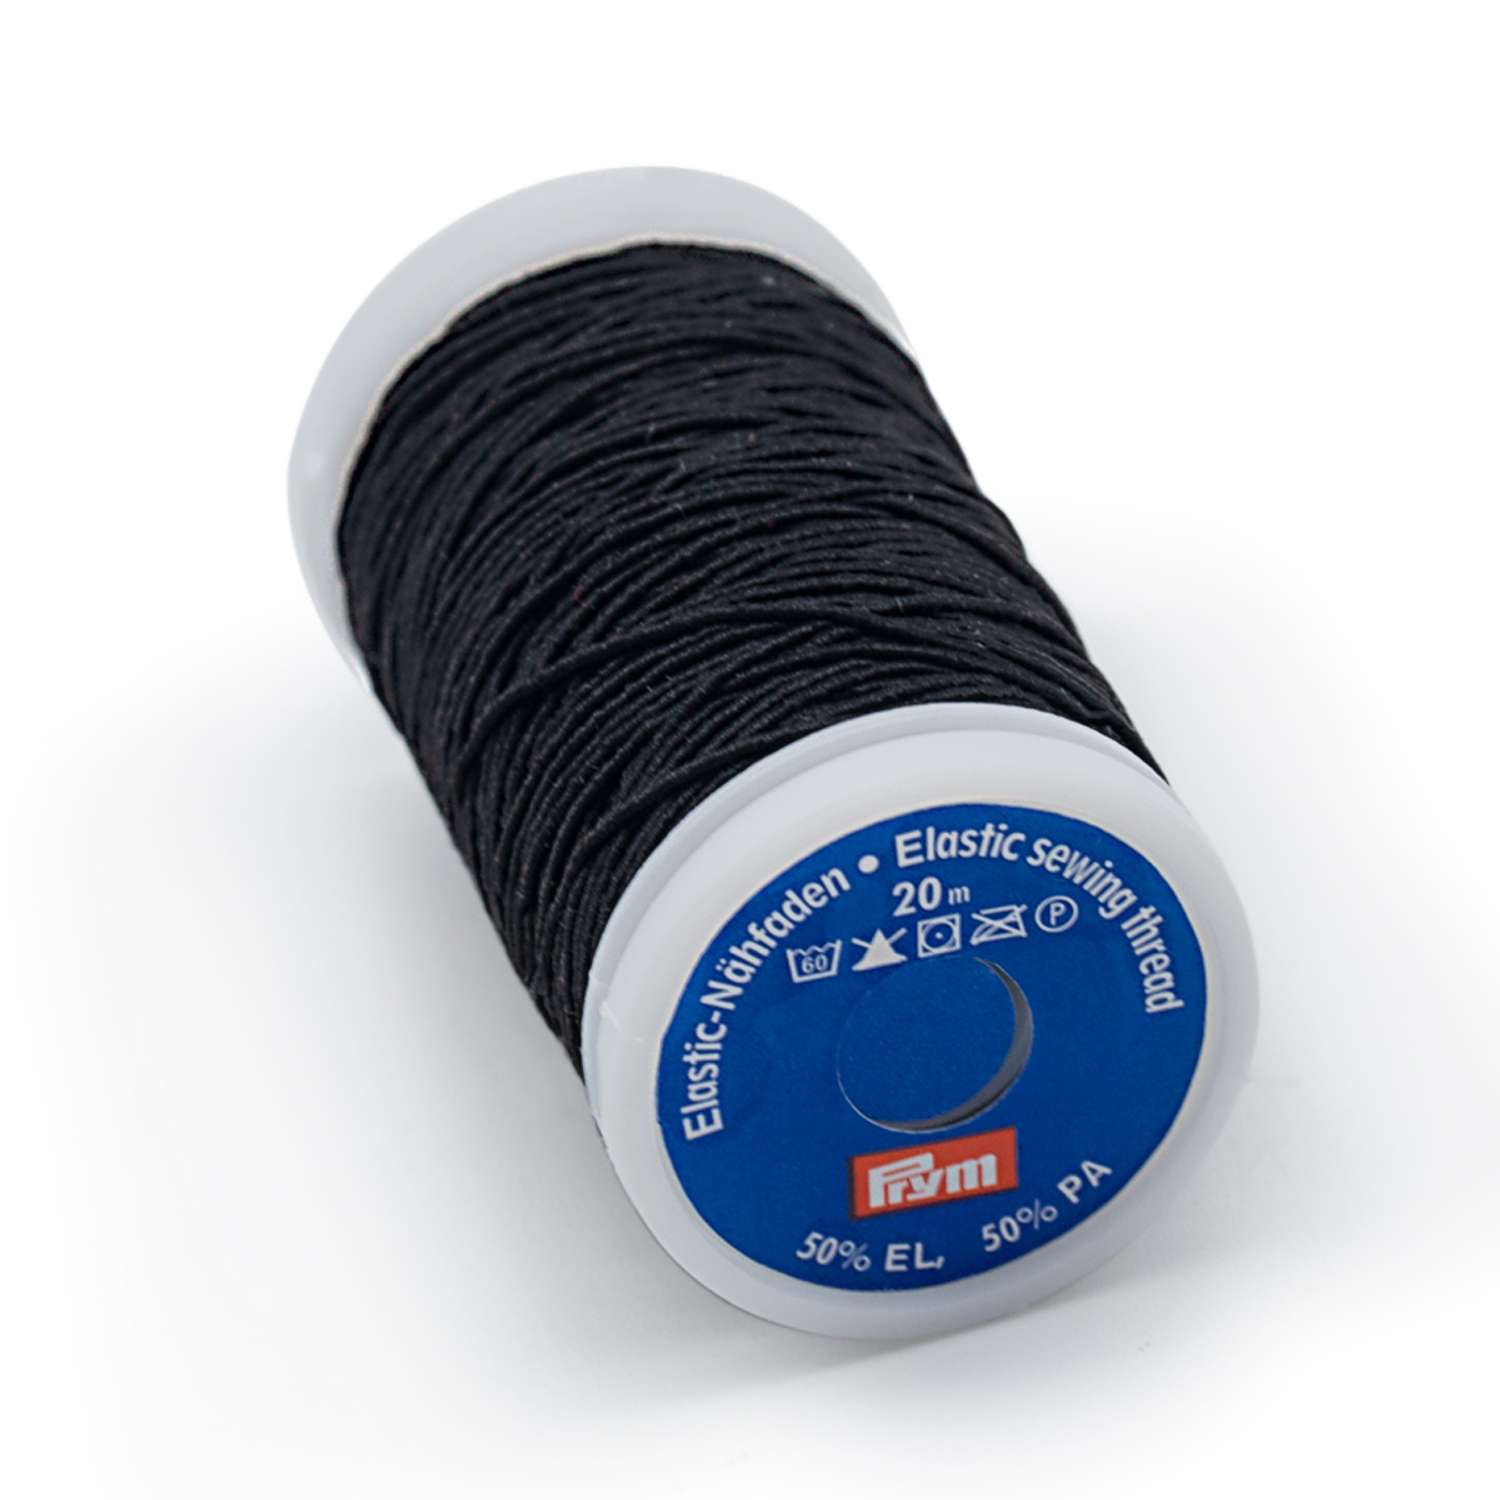 Нитки Prym эластичные для шитья вязания и рукоделия 0.5 мм Черный 1 шт 970010 - фото 2